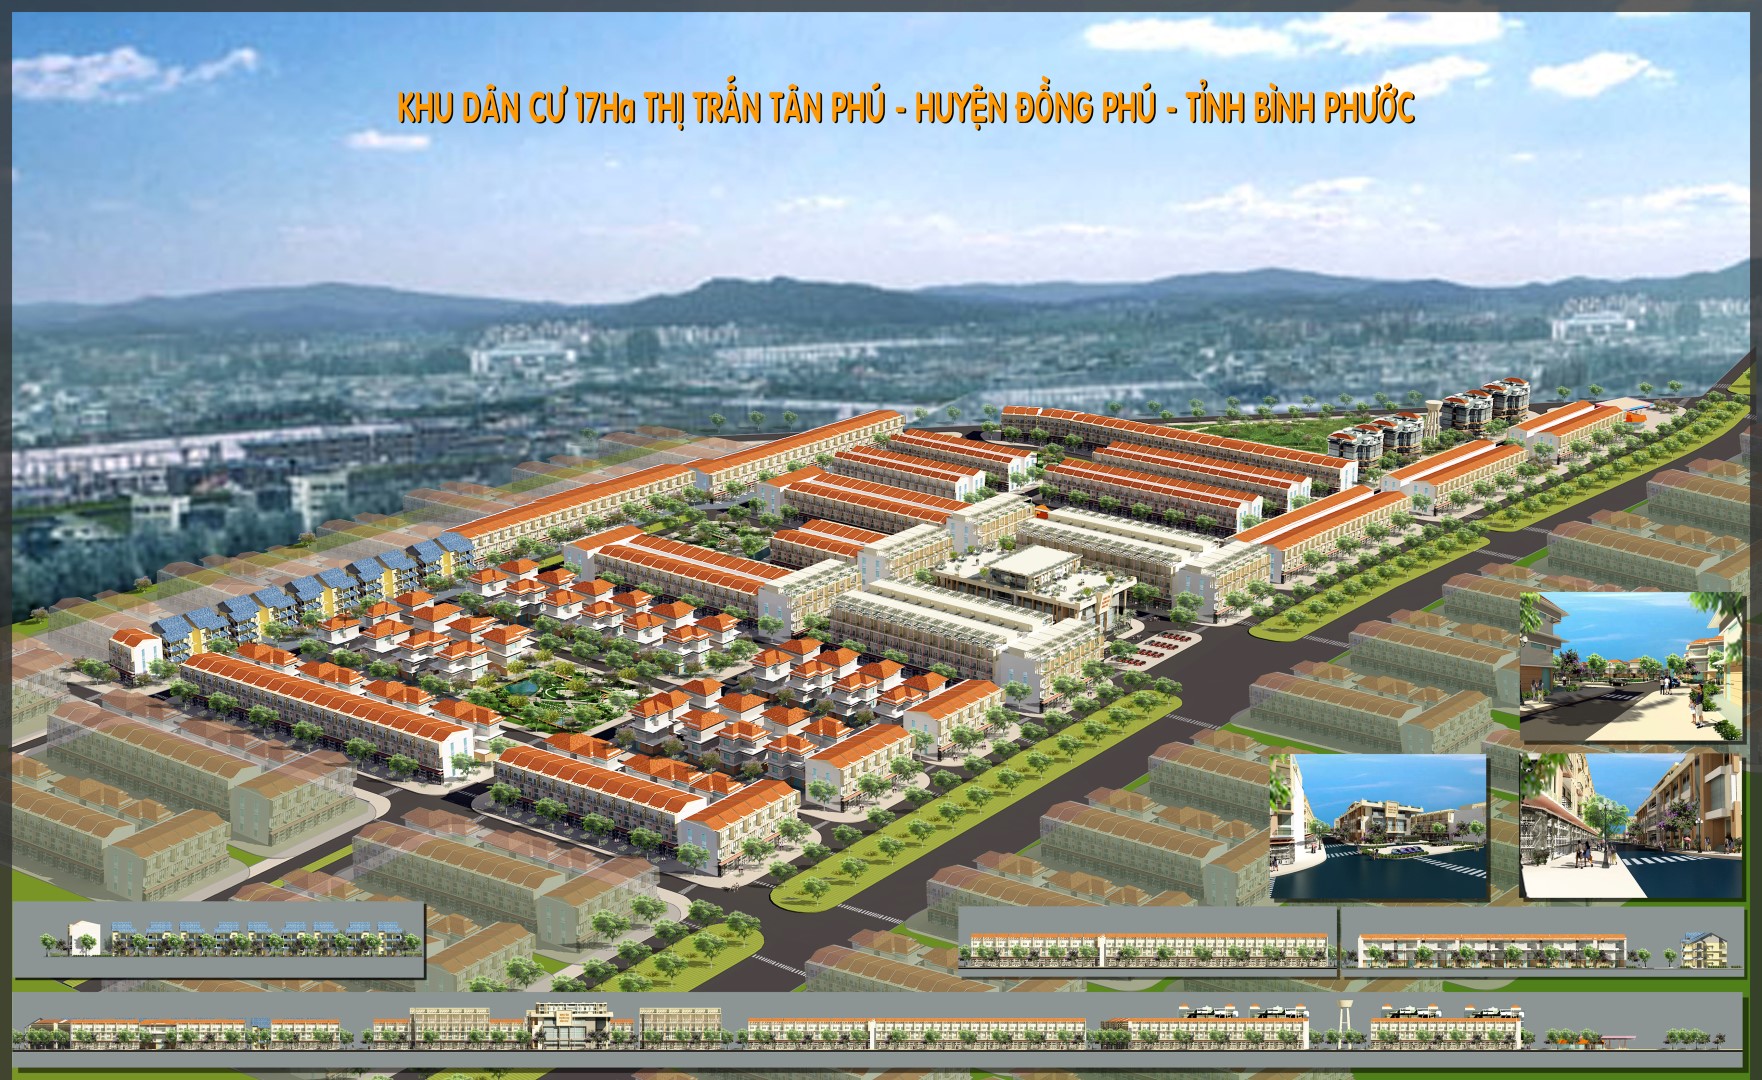 Khu dân cư 17ha - Thị trấn Tân Phú - Huyện Đồng Phú - Tỉnh Bình Phước